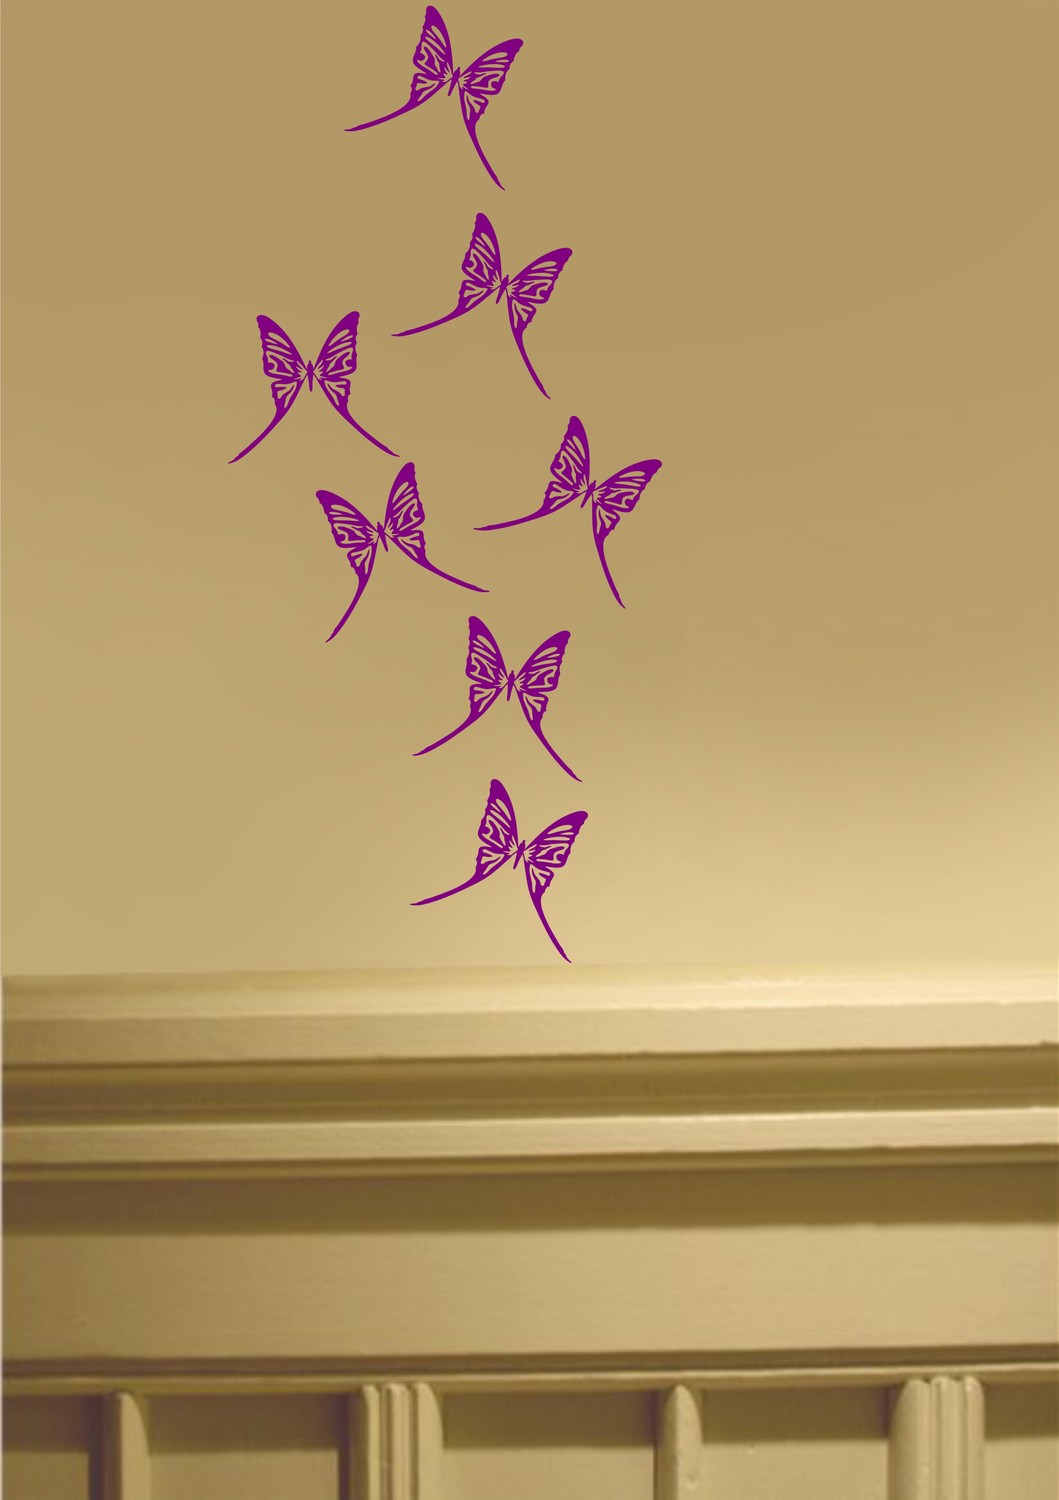 Seven Butterflies New Wall / Car Art Decal Stickers Nursery - Butterfly Imagination